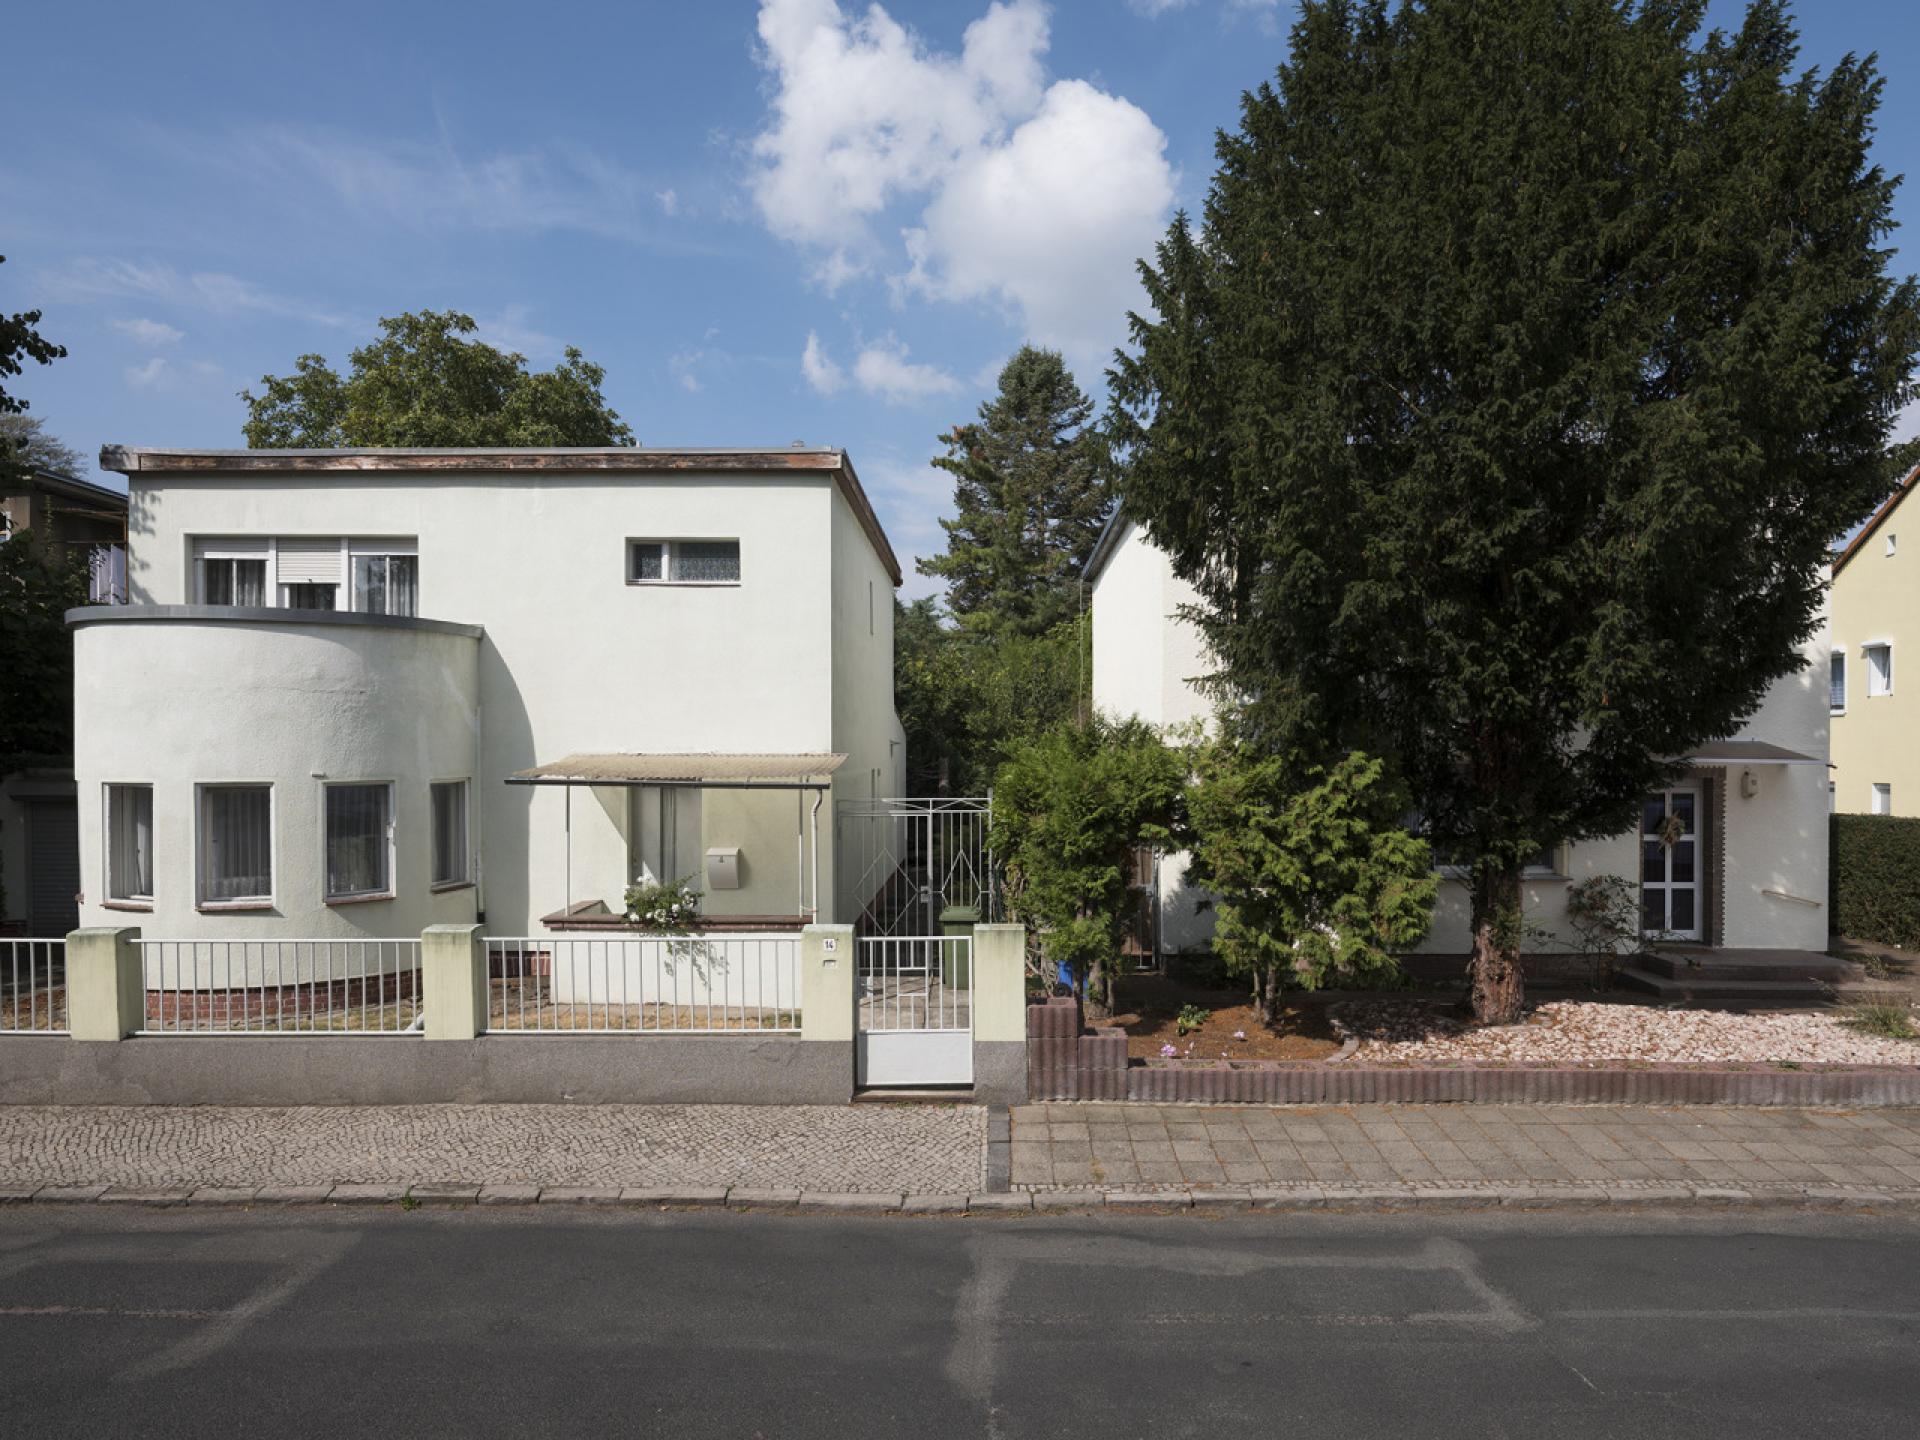 Naurath and Hahn House in Dessau (1928) by Paulick and Muche. | Photo by Thomas Meyer / Ostkreuz, 2018 © Bauhaus Dessau Foundation